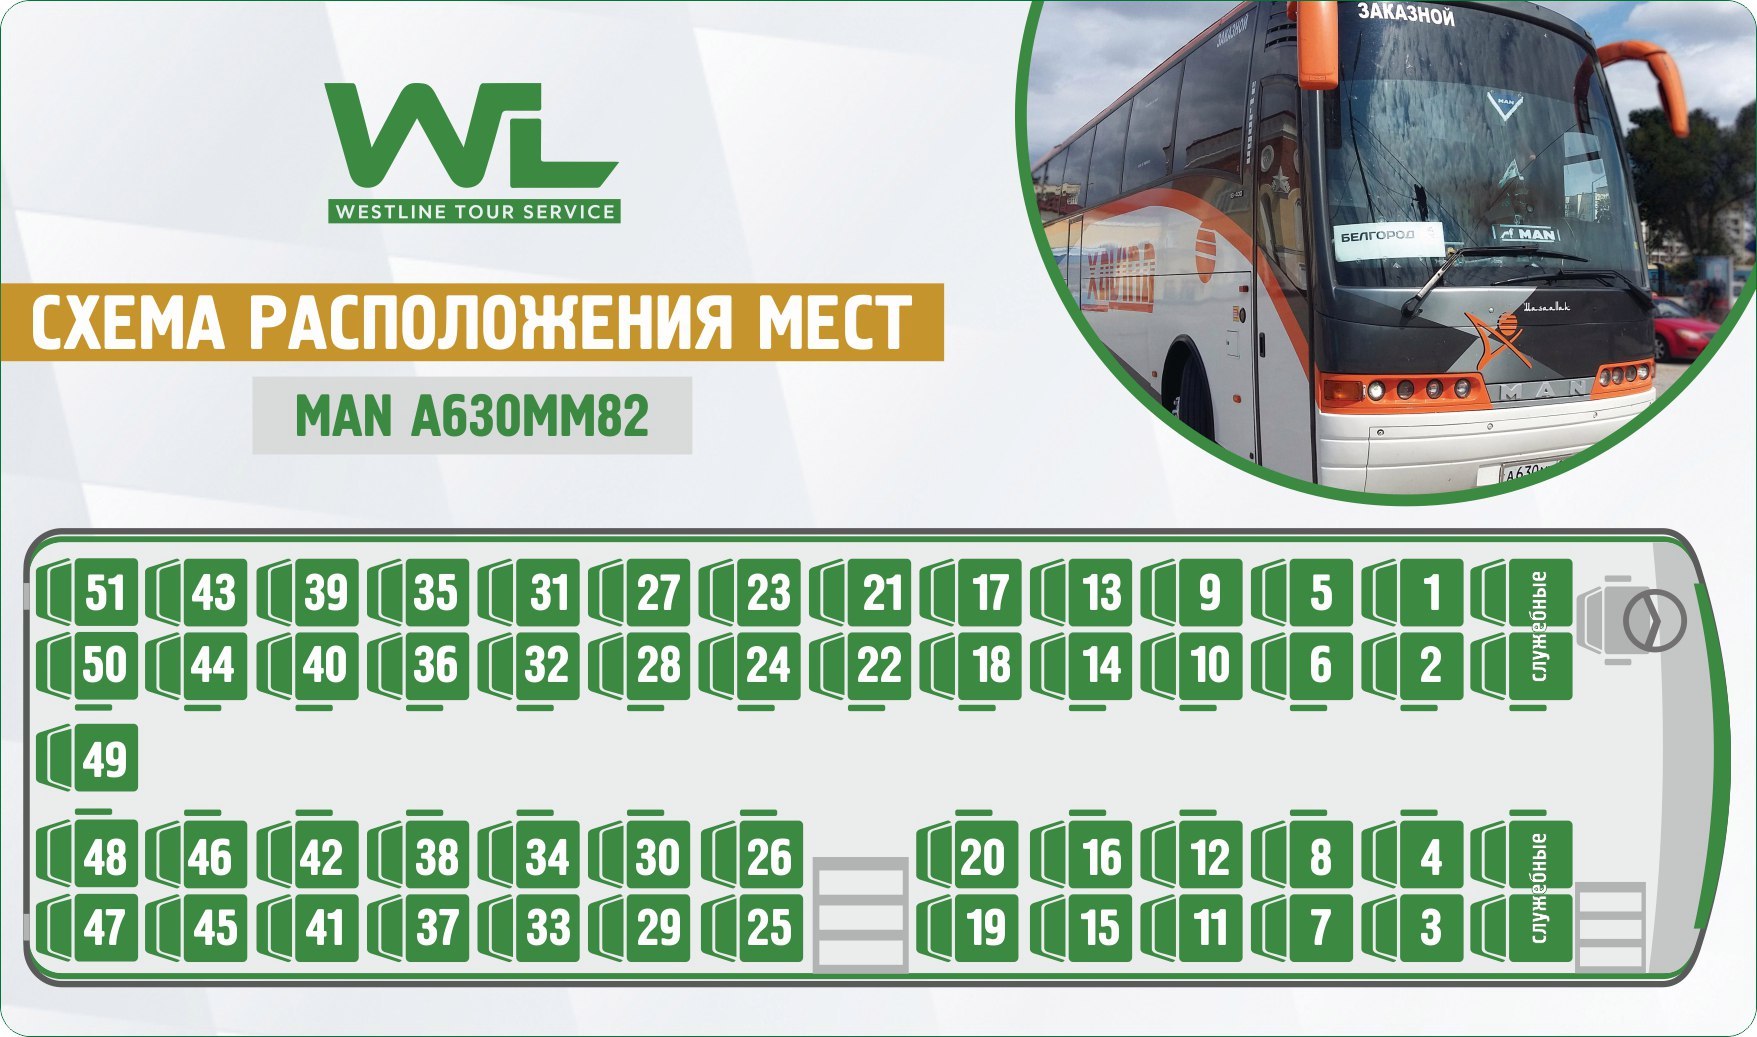 Москва мелитополь автобус купить билет. Нумерация мест в автобусе сетра. Неоплан 49 автобус расположение мест. Neoplan Neoplan (49 мест). Автобус ман 49 мест схема салона.